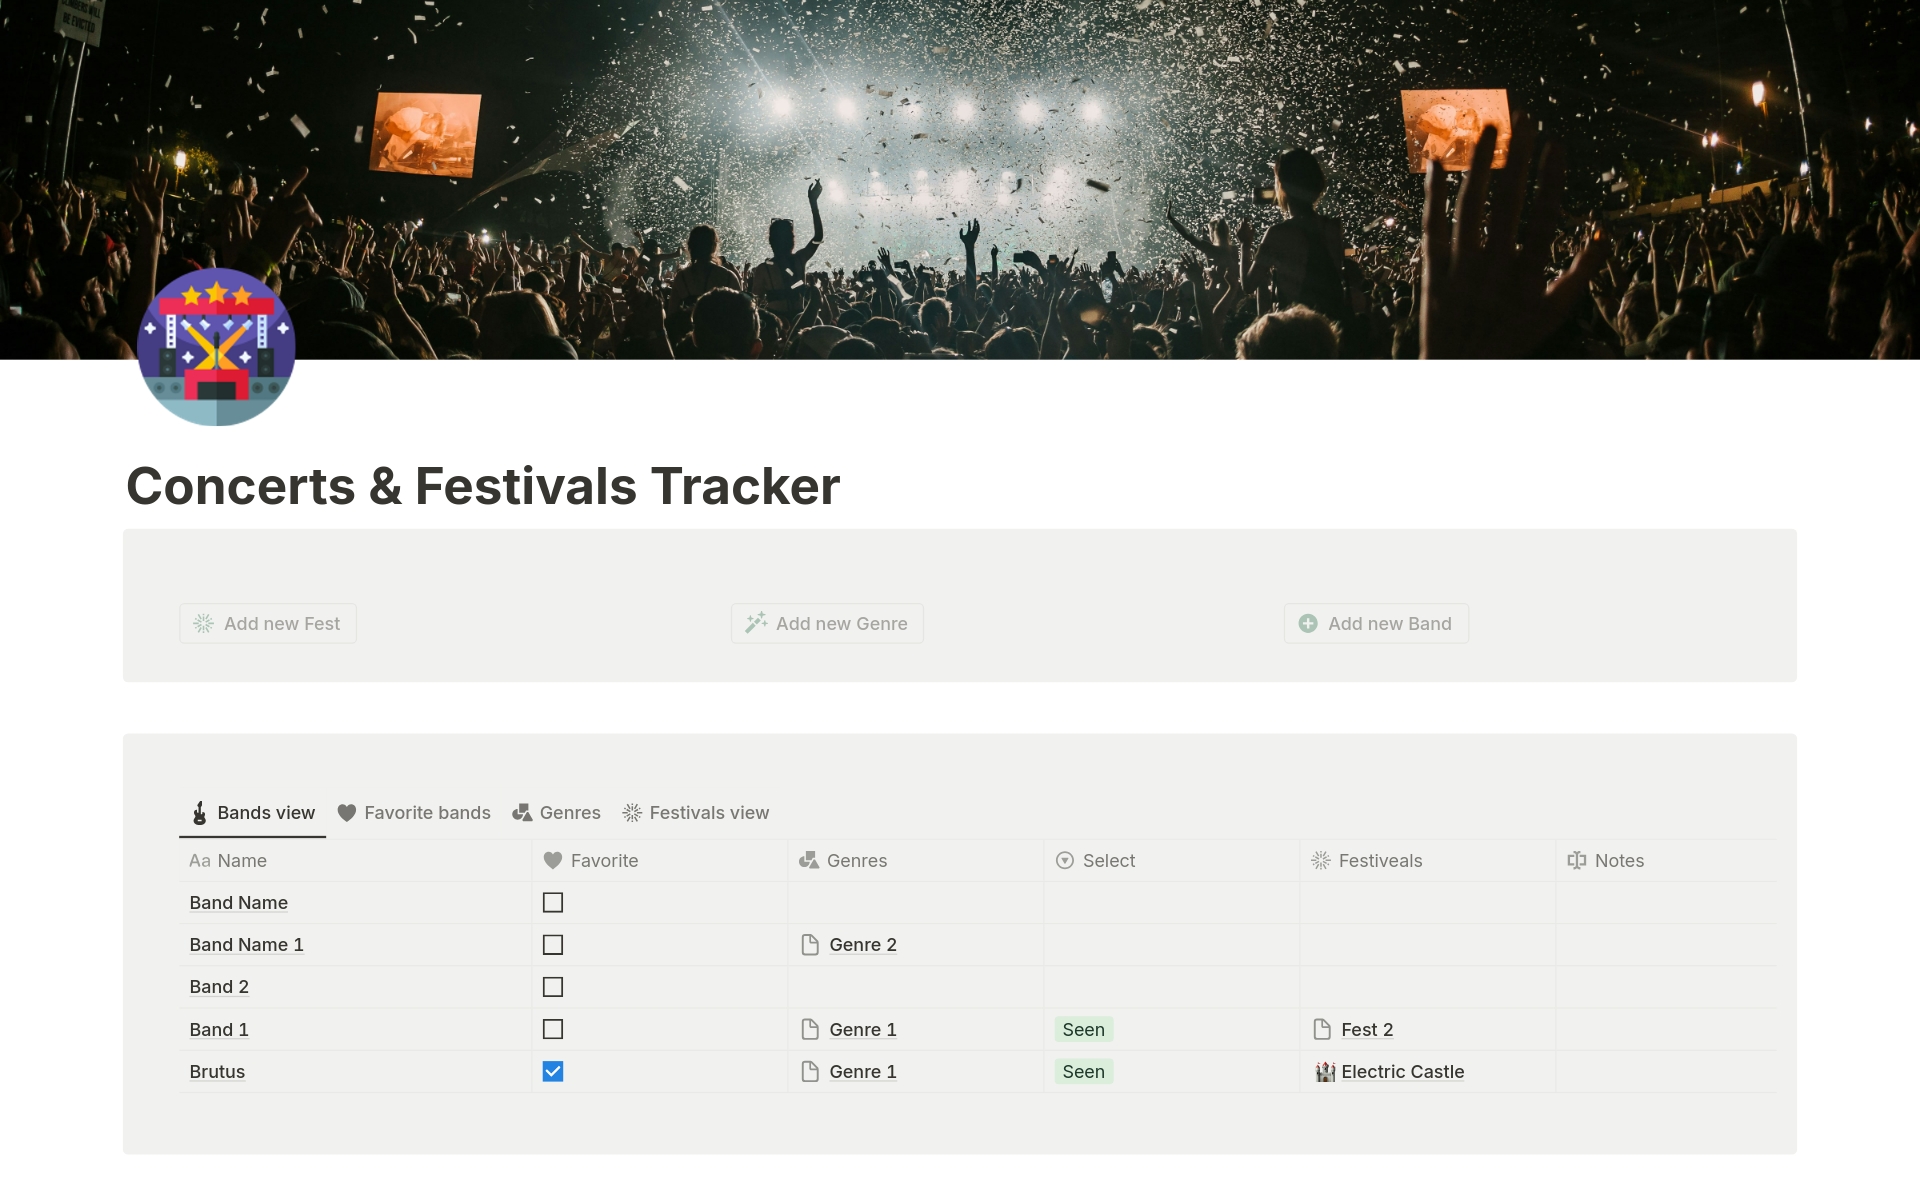 Vista previa de una plantilla para Concerts & Festivals Tracker